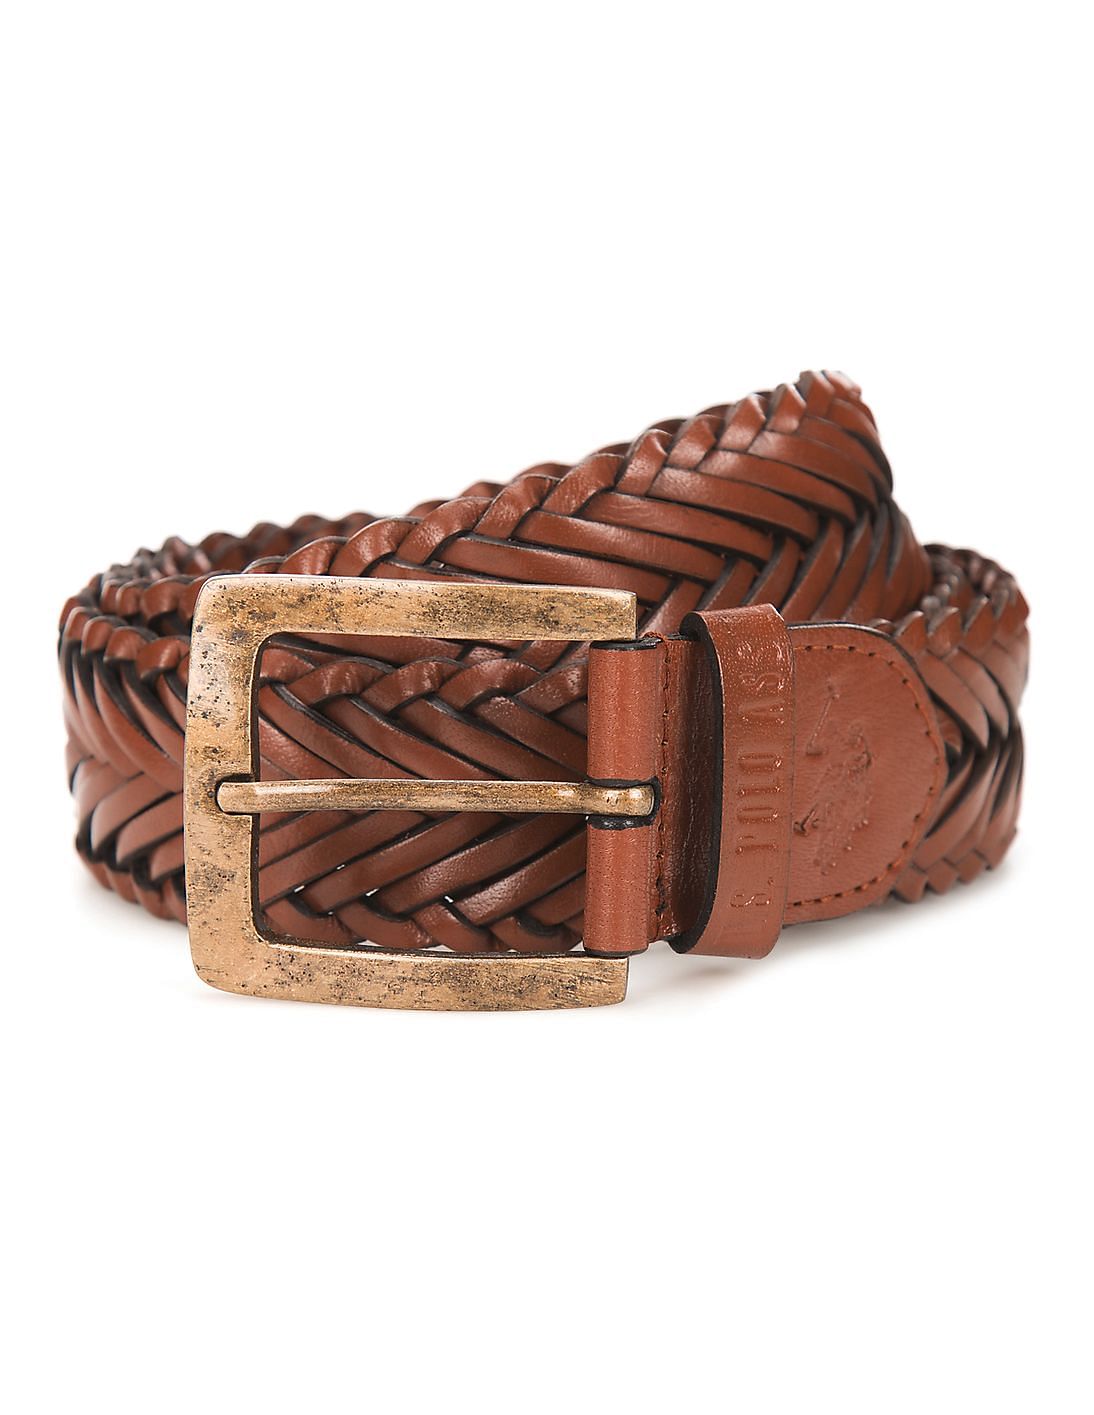 Buy U.S. Polo Assn. Braided Leather Belt - NNNOW.com